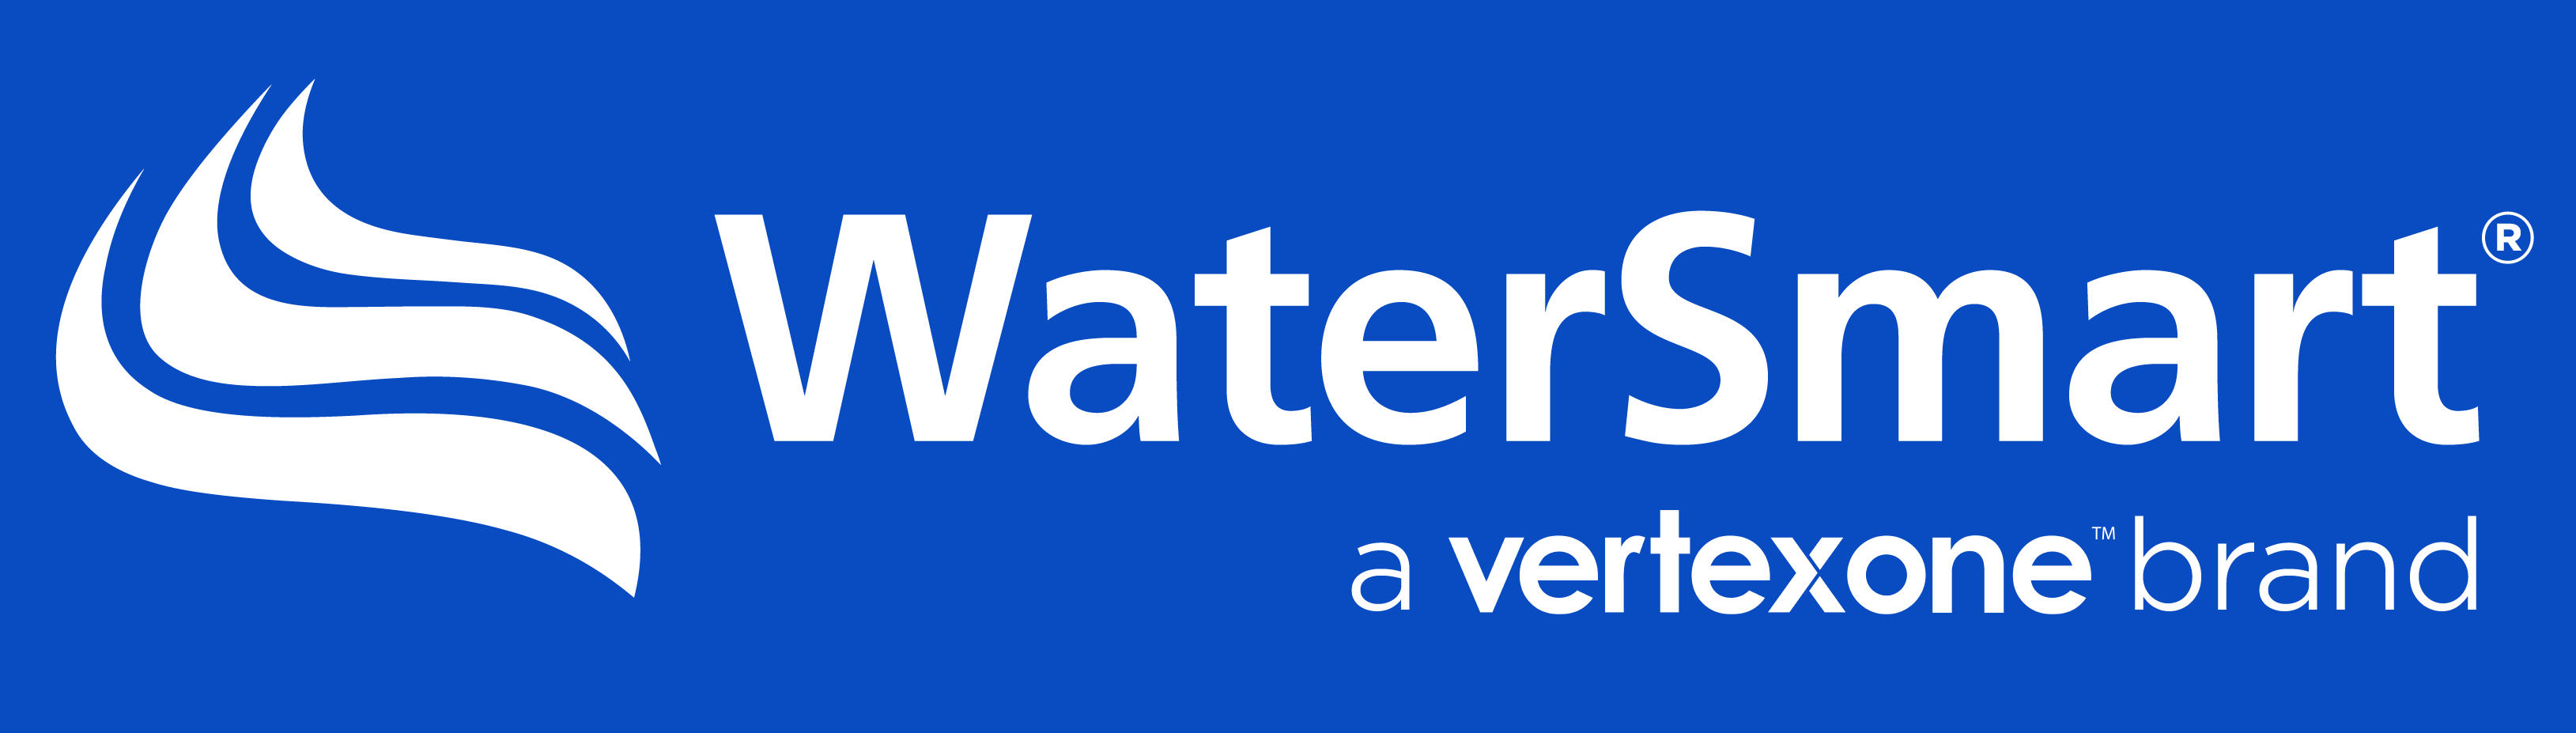 VX WaterSmart